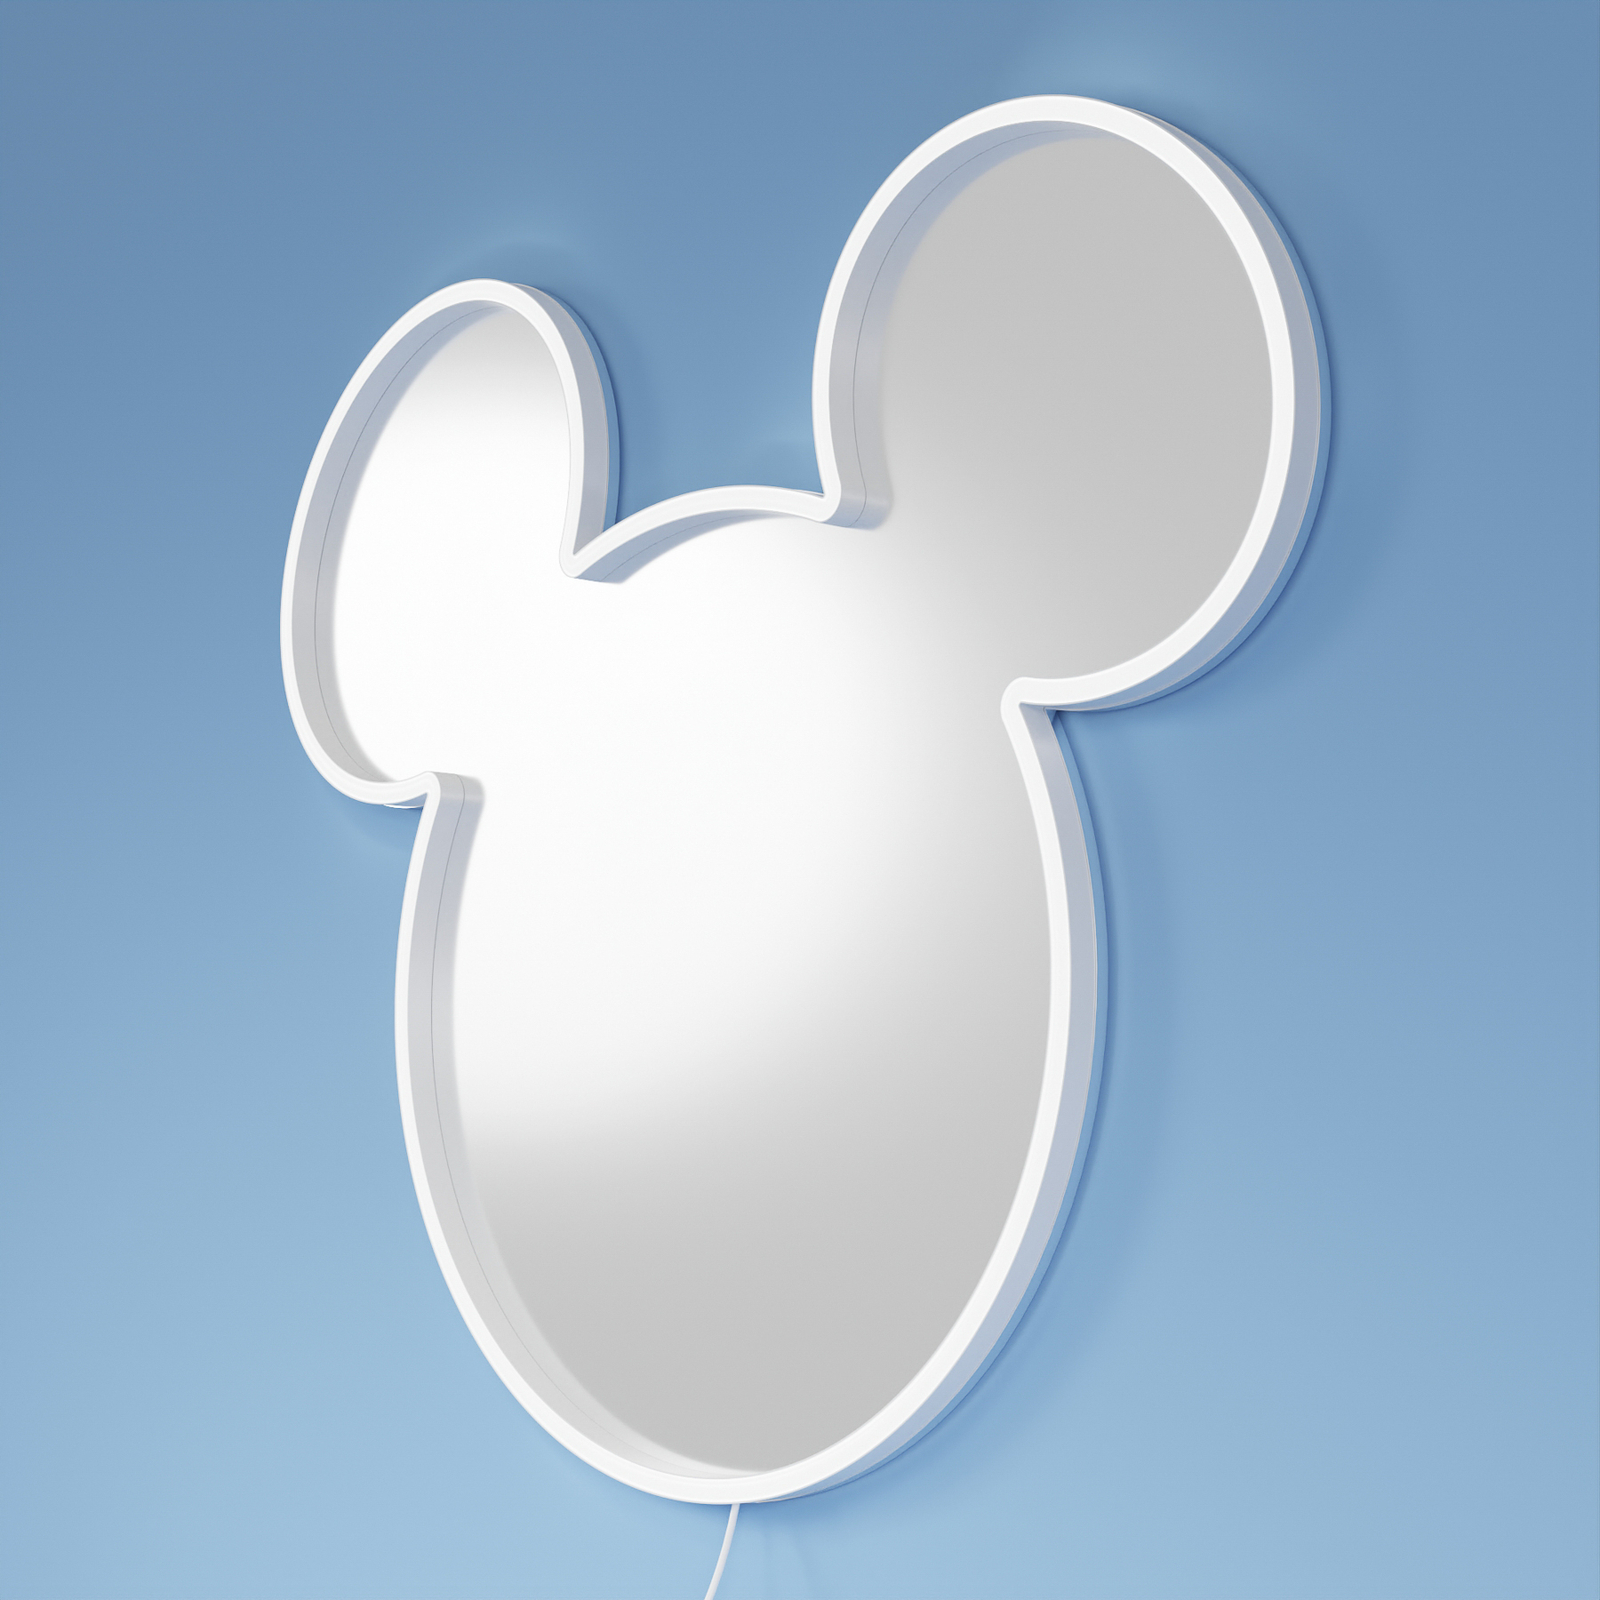 YellowPop "Disney" "Mickey" sieninis veidrodis, sidabrinis